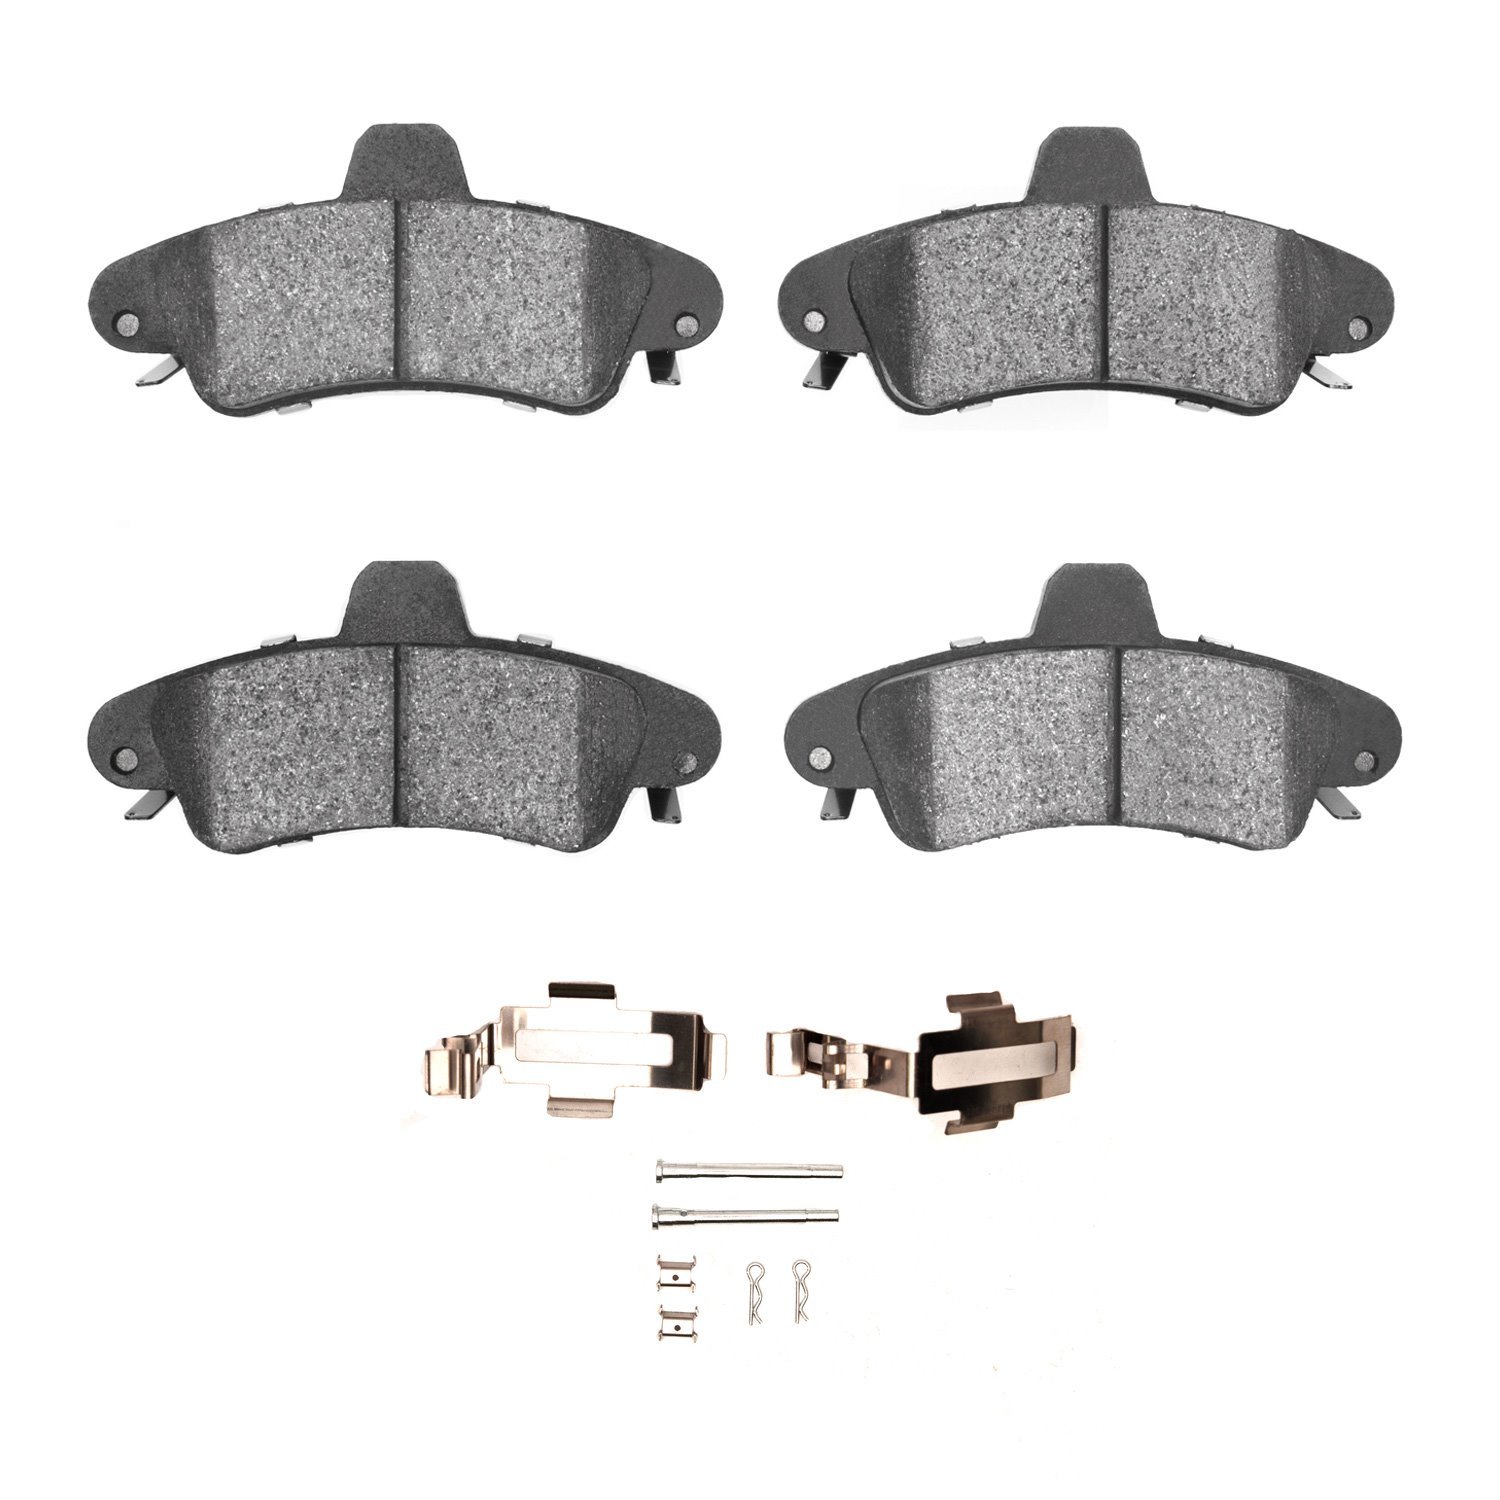 Ceramic Brake Pads & Hardware Kit, 1995-2002 Ford/Lincoln/Mercury/Mazda, Position: Rear